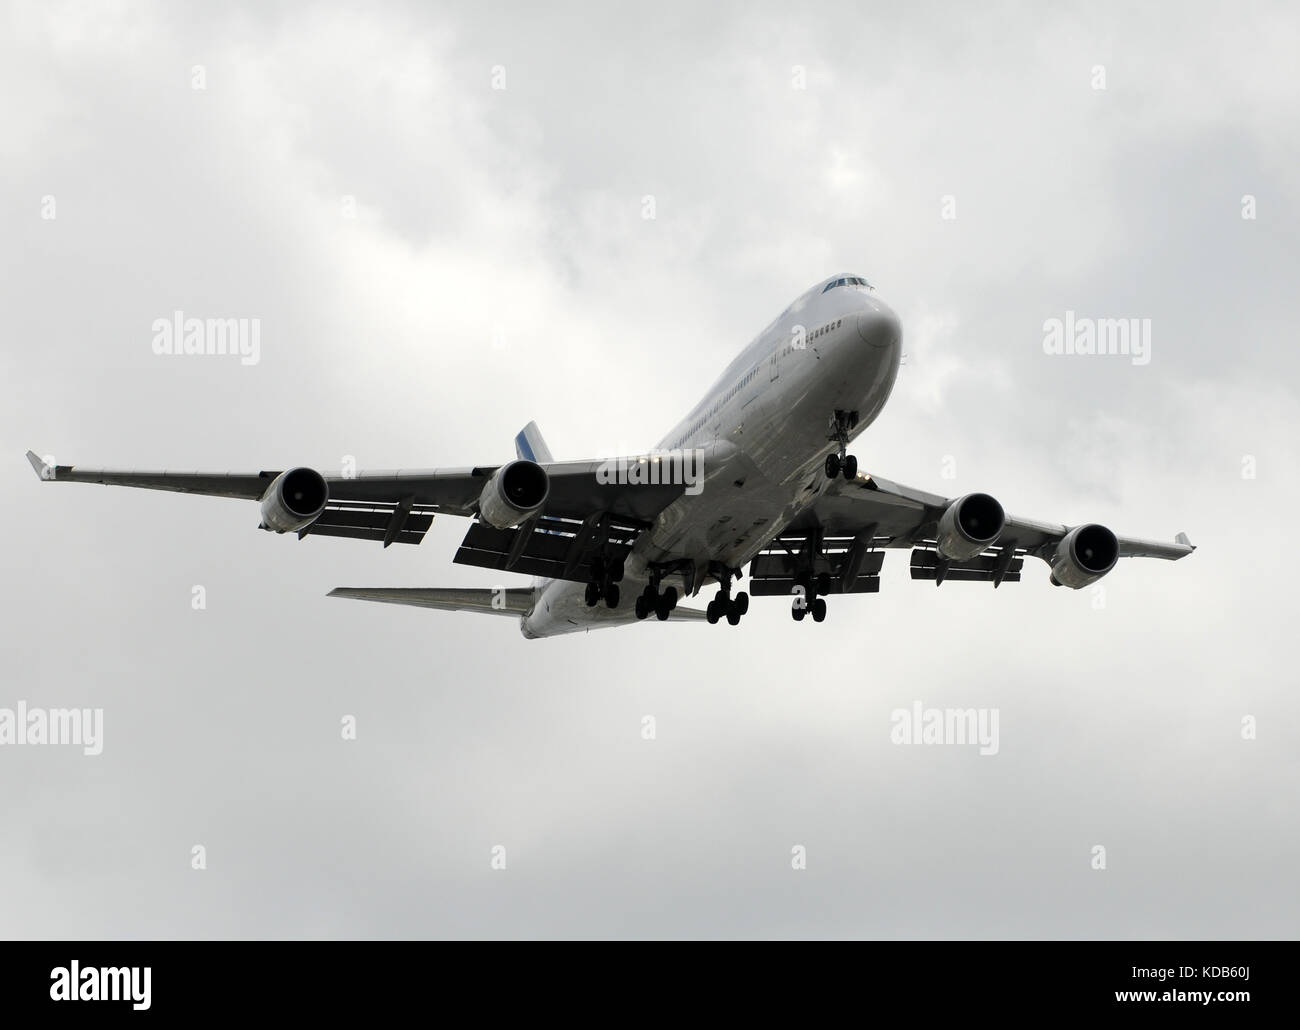 Large passenger jet airplane for longhaul travel Stock Photo